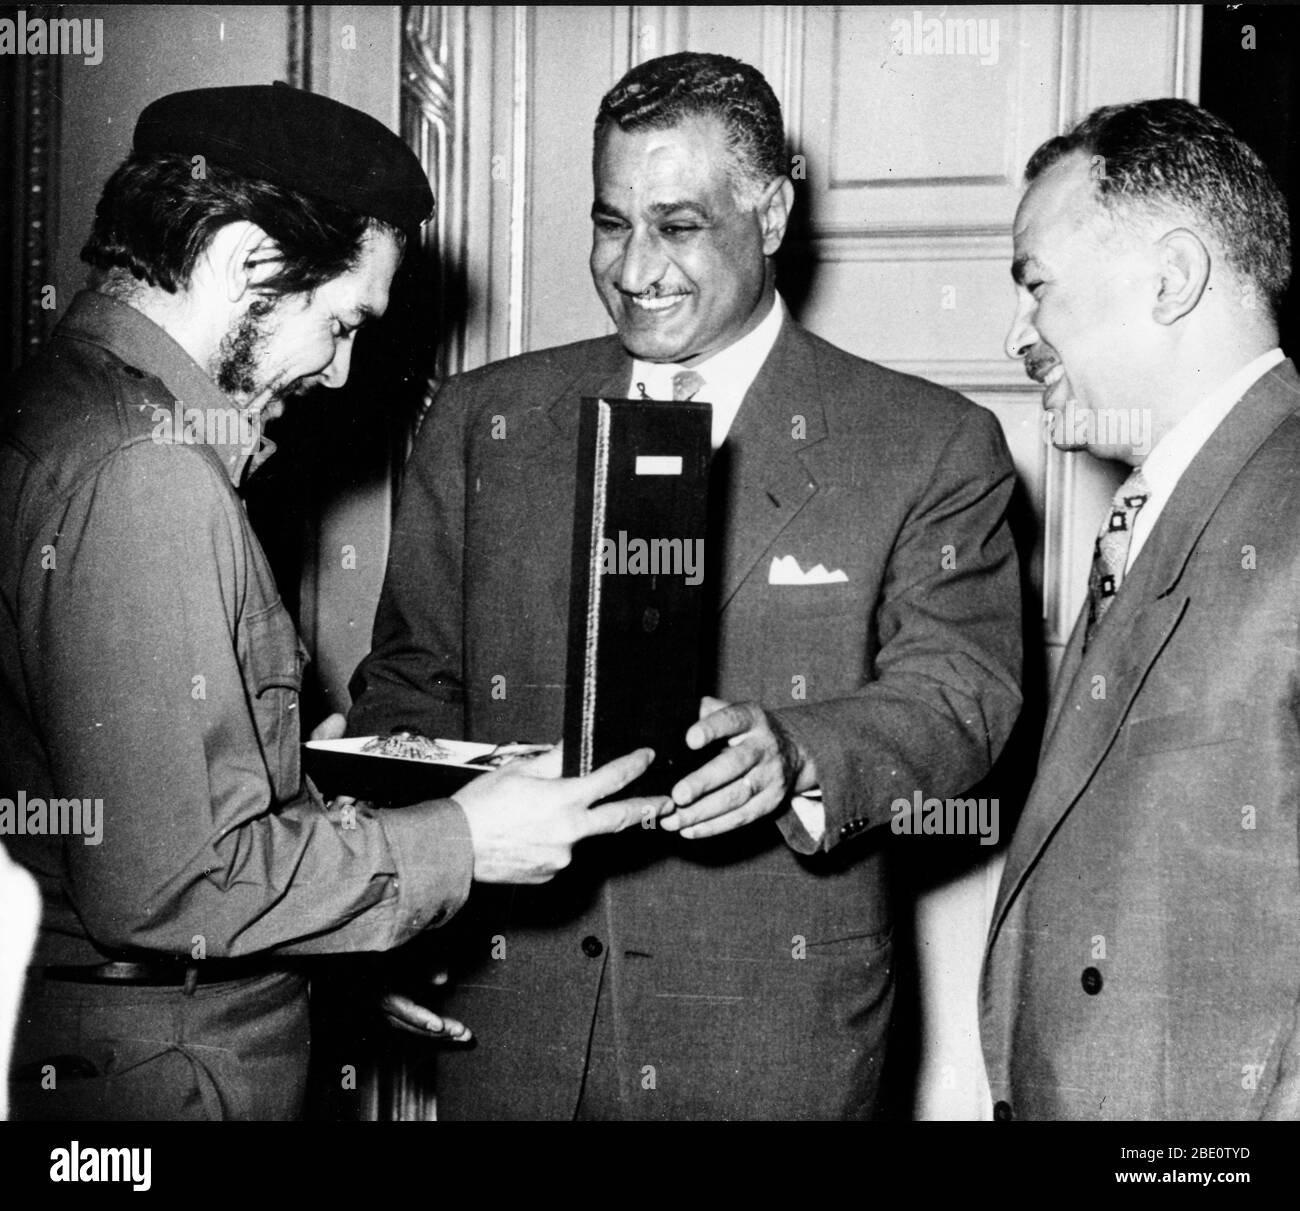 22. Juni 1959 - Kairo, Ägypten - der ägyptische Präsident GAMAL ABDEL NASSER (in der Mitte) verleiht dem Kommandanten ERNESTO 'CHE' GUEVARA den Orden von Al Goumbania mit einem weiteren Mann, der sich umschaut. Guevara, der seinen ersten offiziellen Posten in Kuba als Botschafter erhielt, war an der Leitung einer kubanischen Zivildelegation nach Ägypten. Nasser, Führer der blockfreien Länder, war das erste Staatsoberhaupt, das einen Botschafter des Castro-Regimes begrüßte.(Bild: © Keystone Press Agency/Keystone USA via ZUMAPRESS.com) Stockfoto